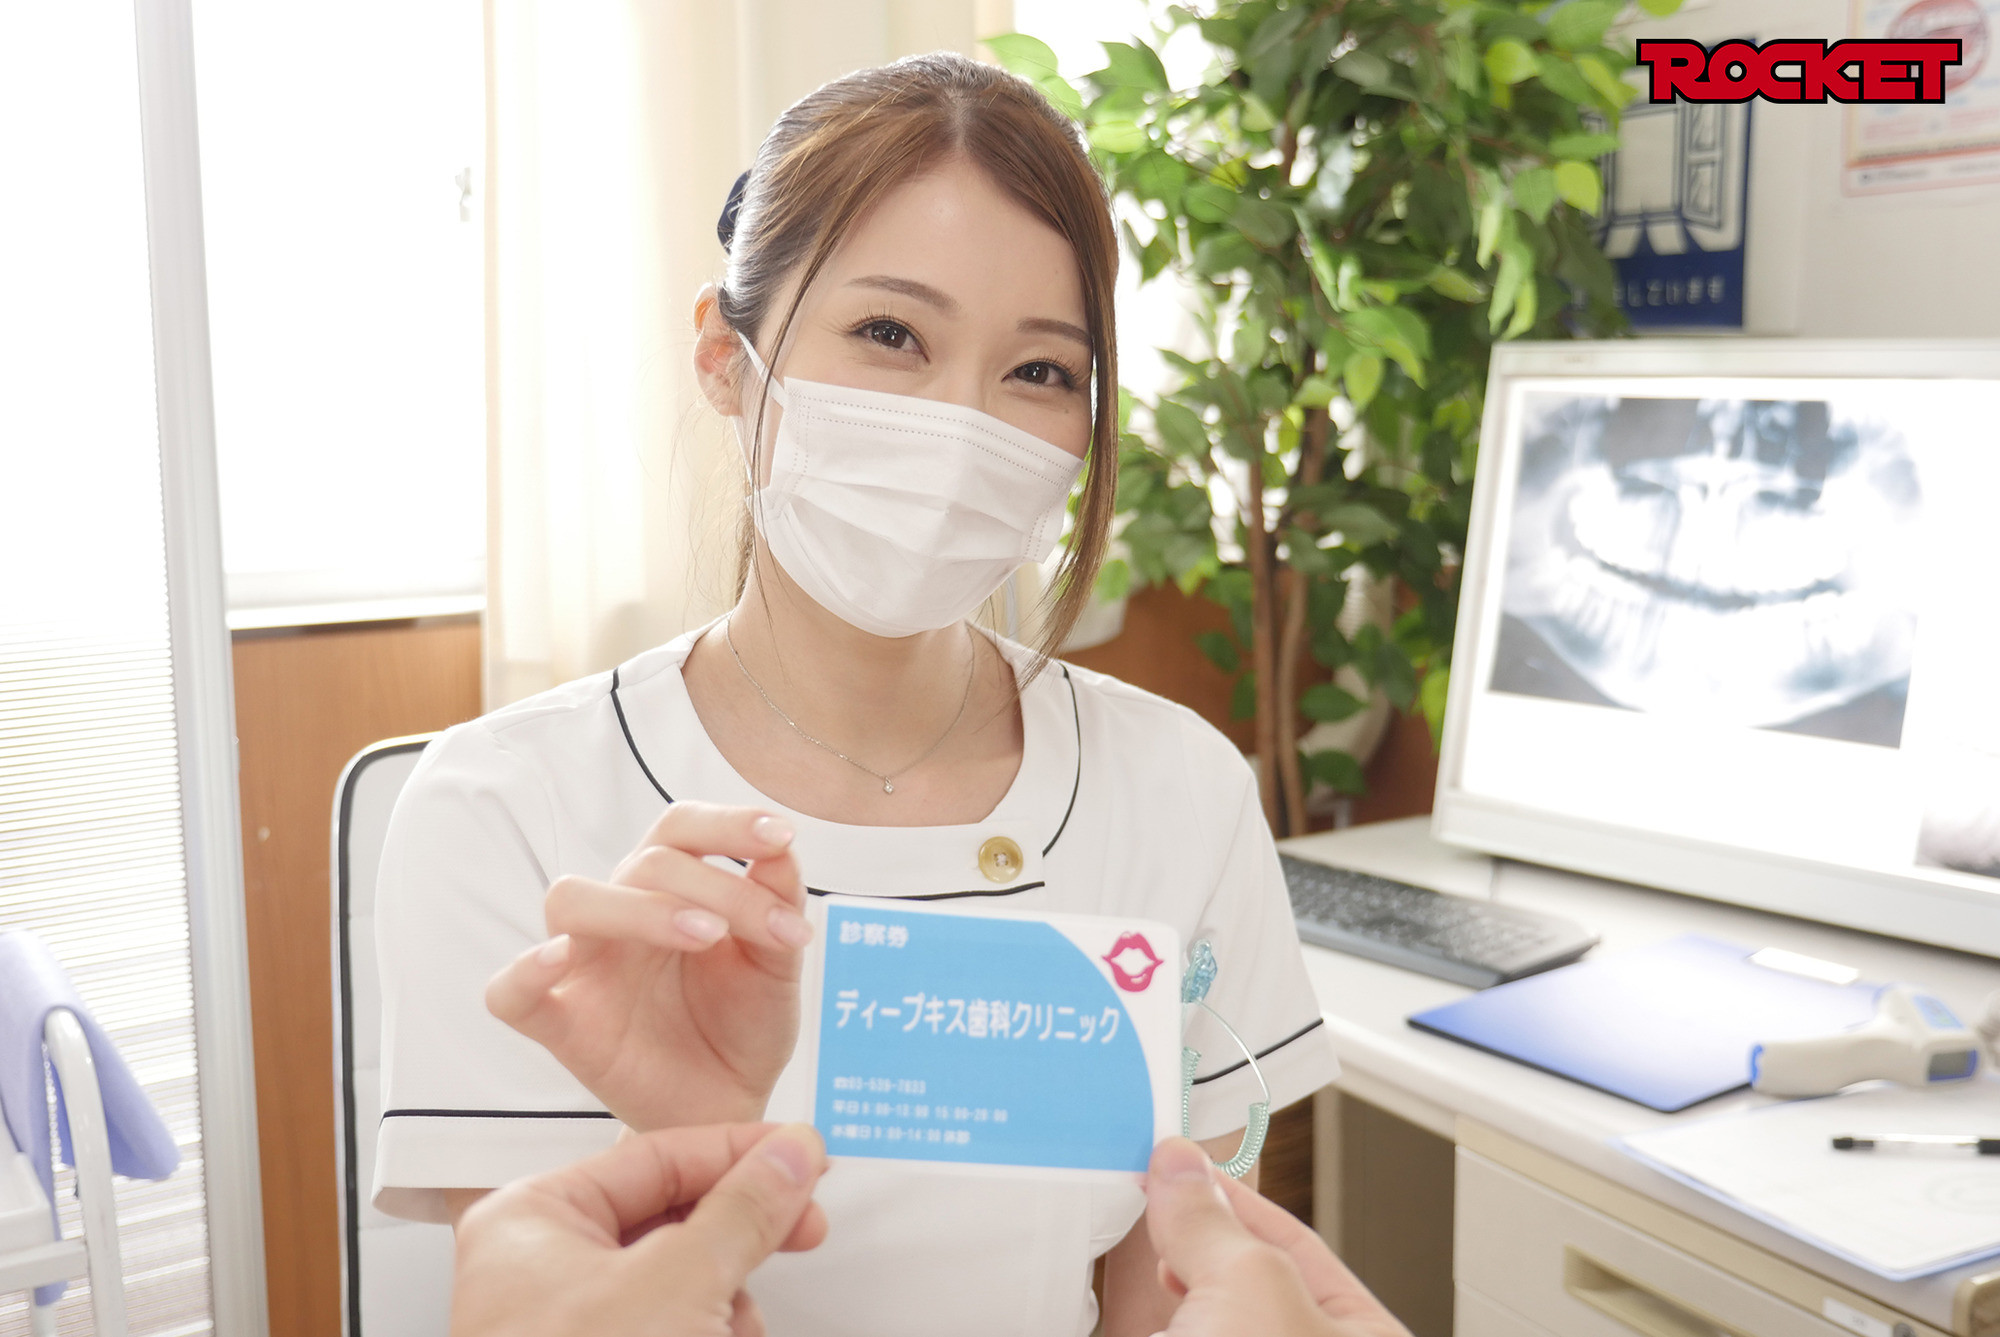 ★【妄想】ディープキス歯科クリニック 5 佐伯由美香先生のアナコンダキスSP